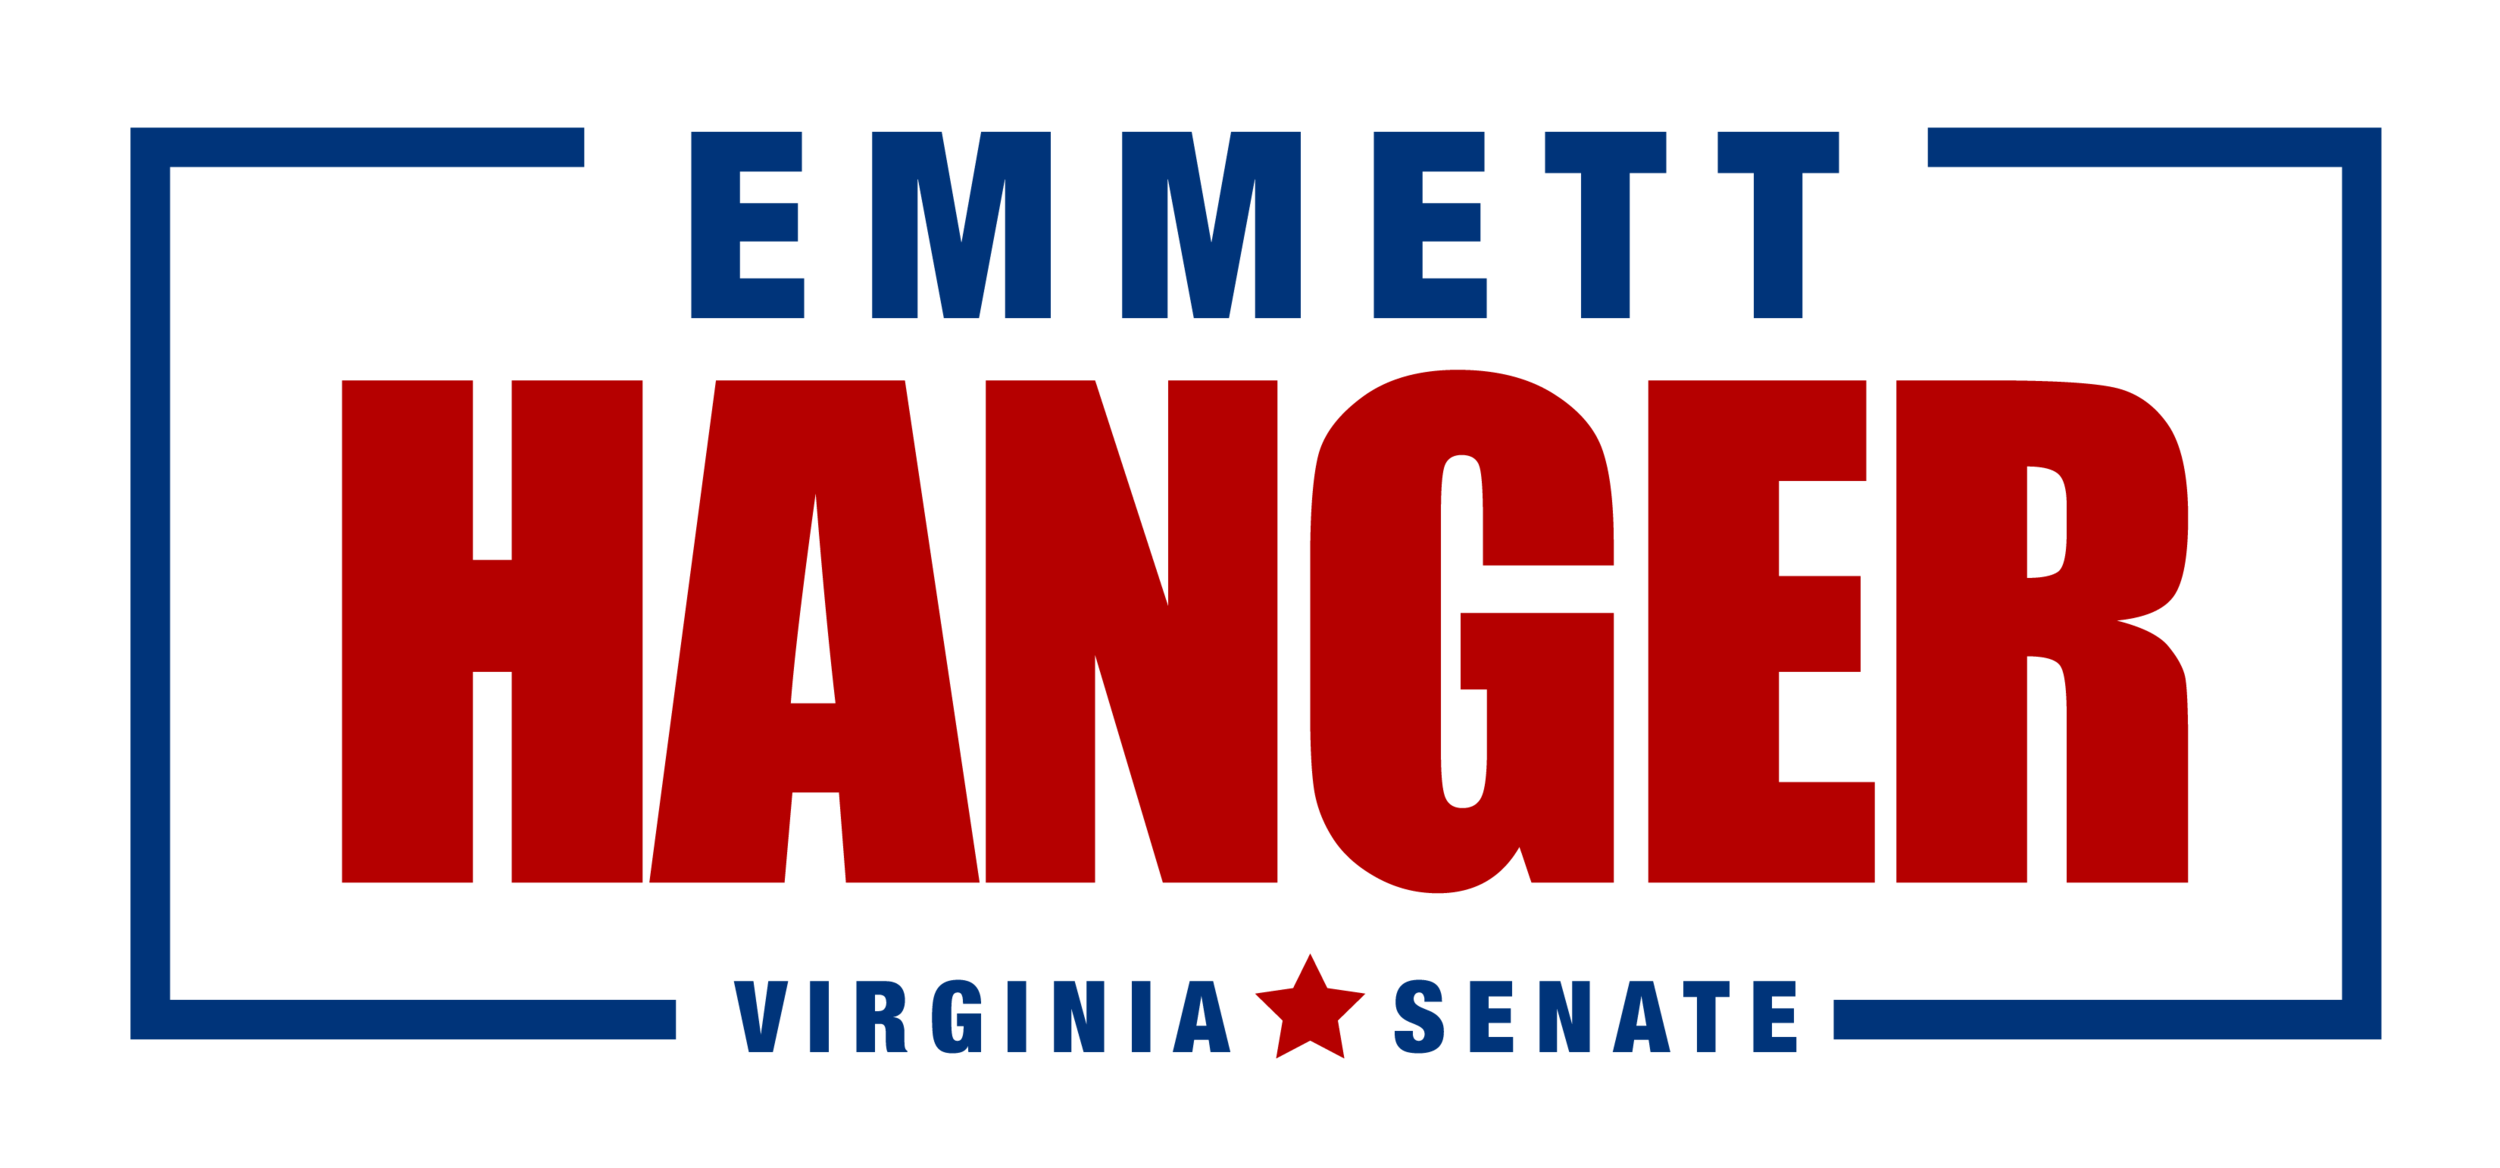 Emmett Hanger for Senate